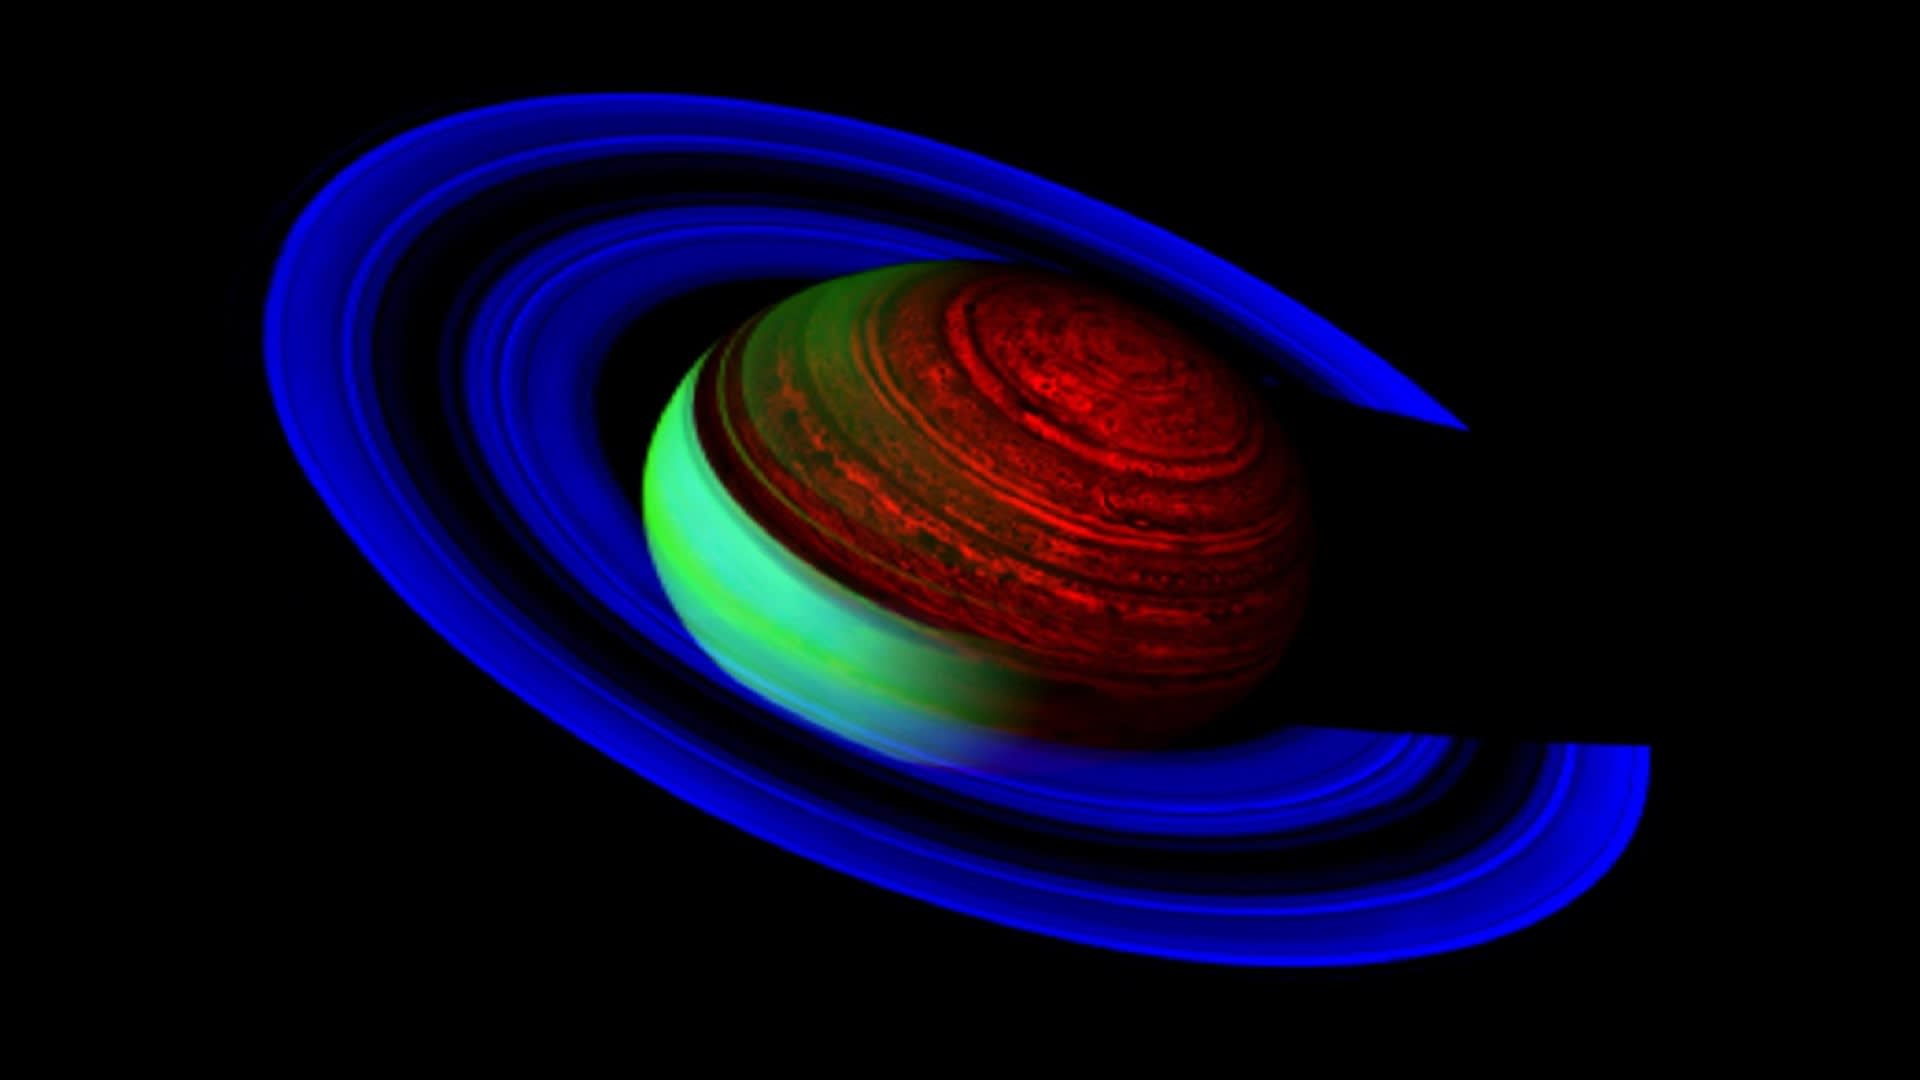 Saturn sužuje gigantická bouře